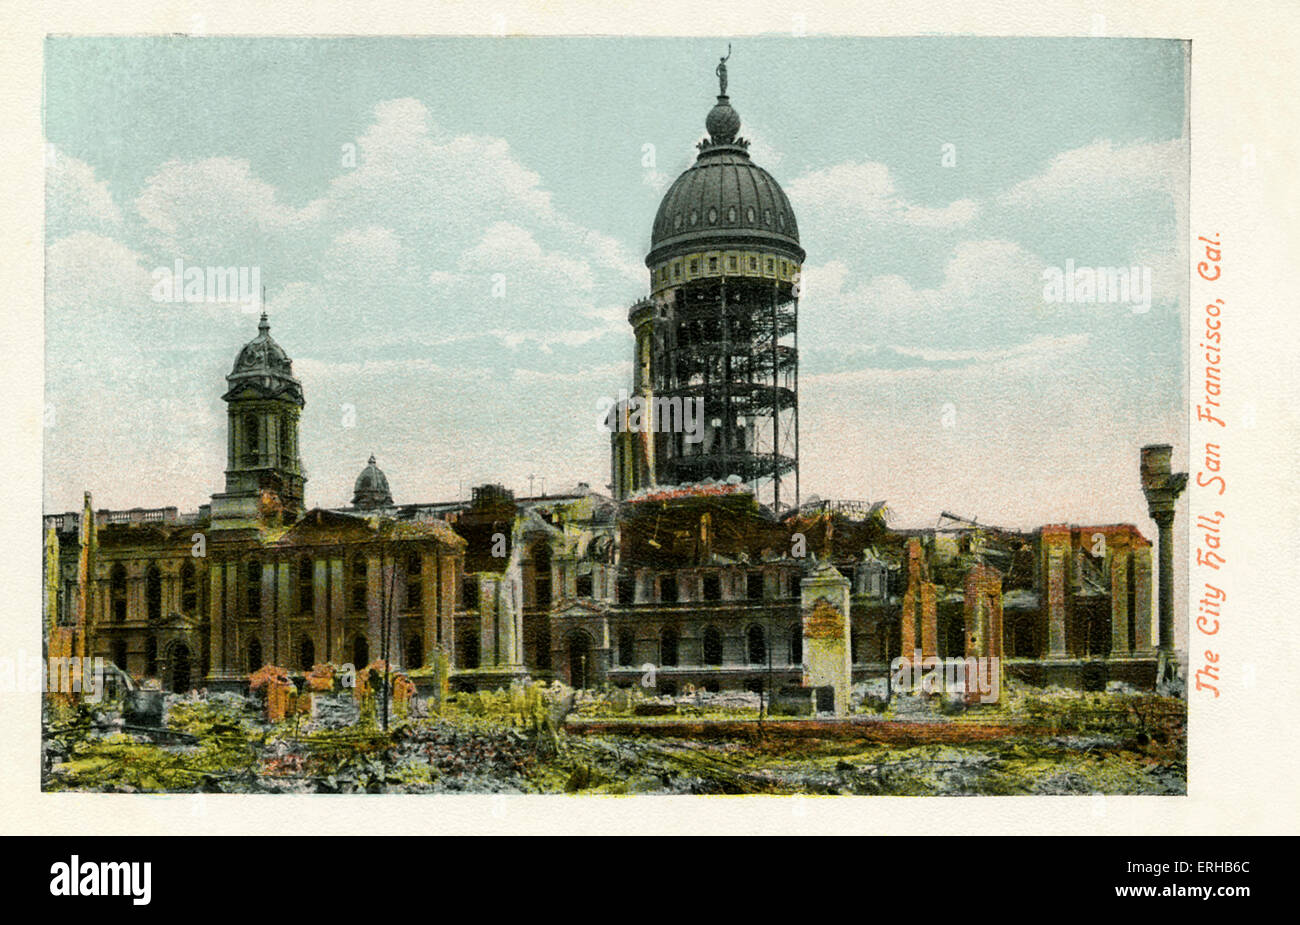 San-Francisco-Erdbeben von 18. April 1906. Die City Hall, abgebildet, wurde fast vollständig zerstört. Stockfoto